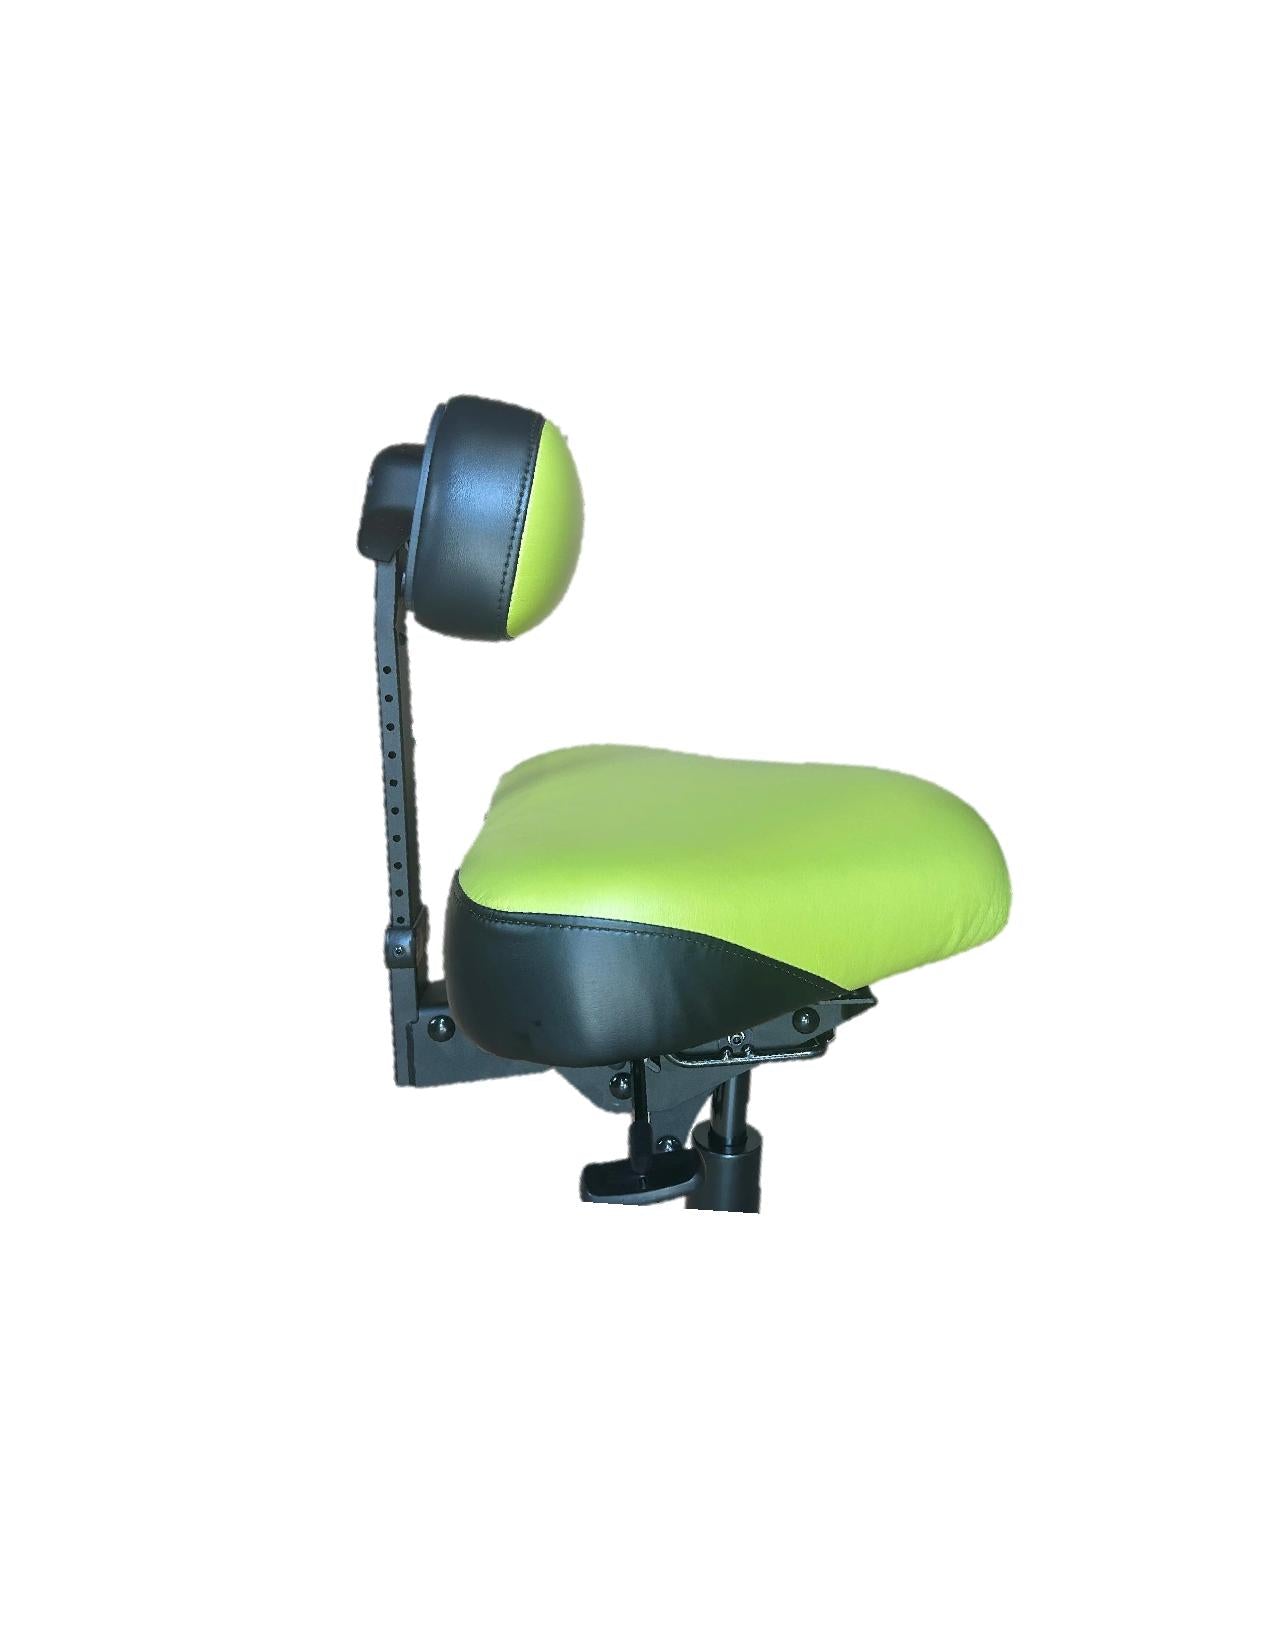 RGP Saddle Stool Seat Cushion- Single Padded – RGP Dental